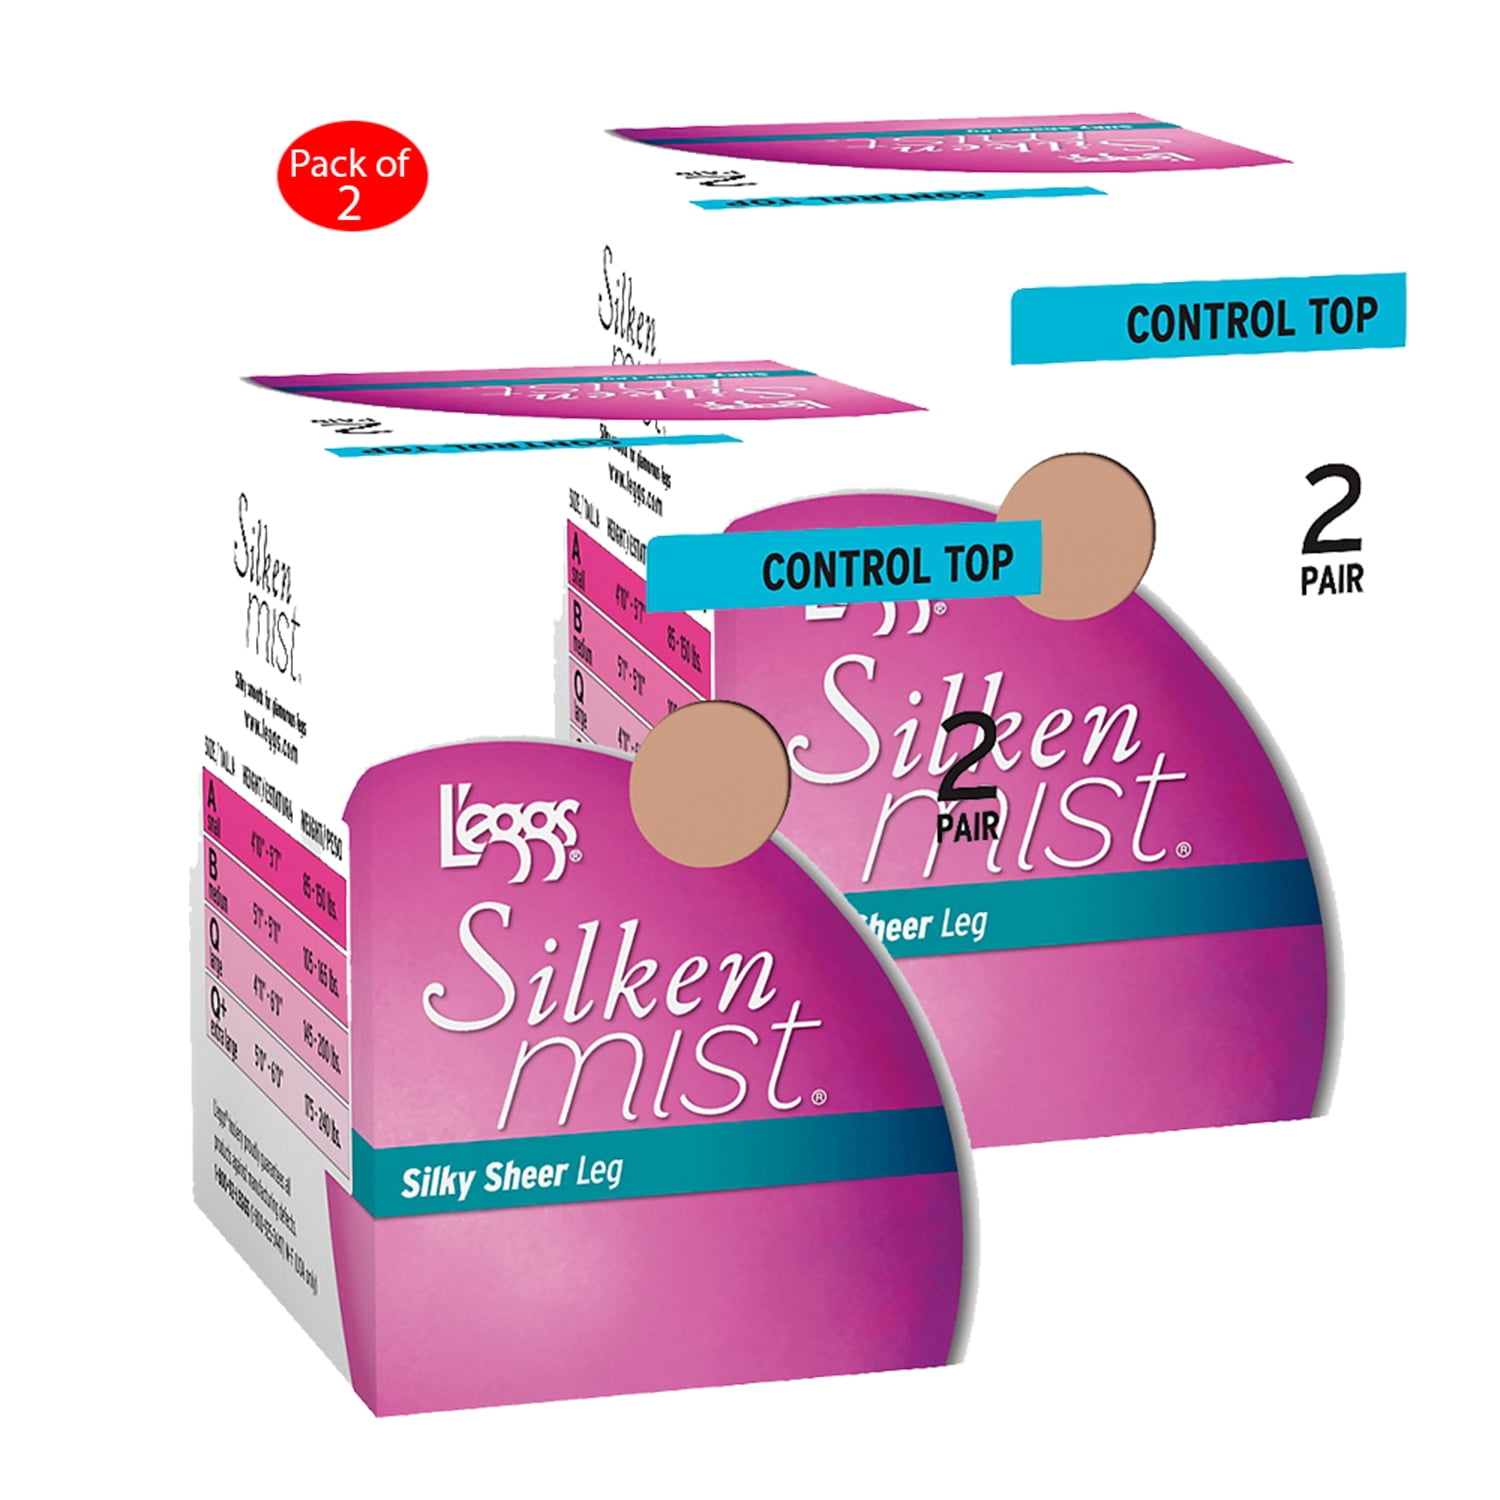 L'eggs - Leggs Silken Mist Control Top Panty Hose 2 Pair Pack, Color ...